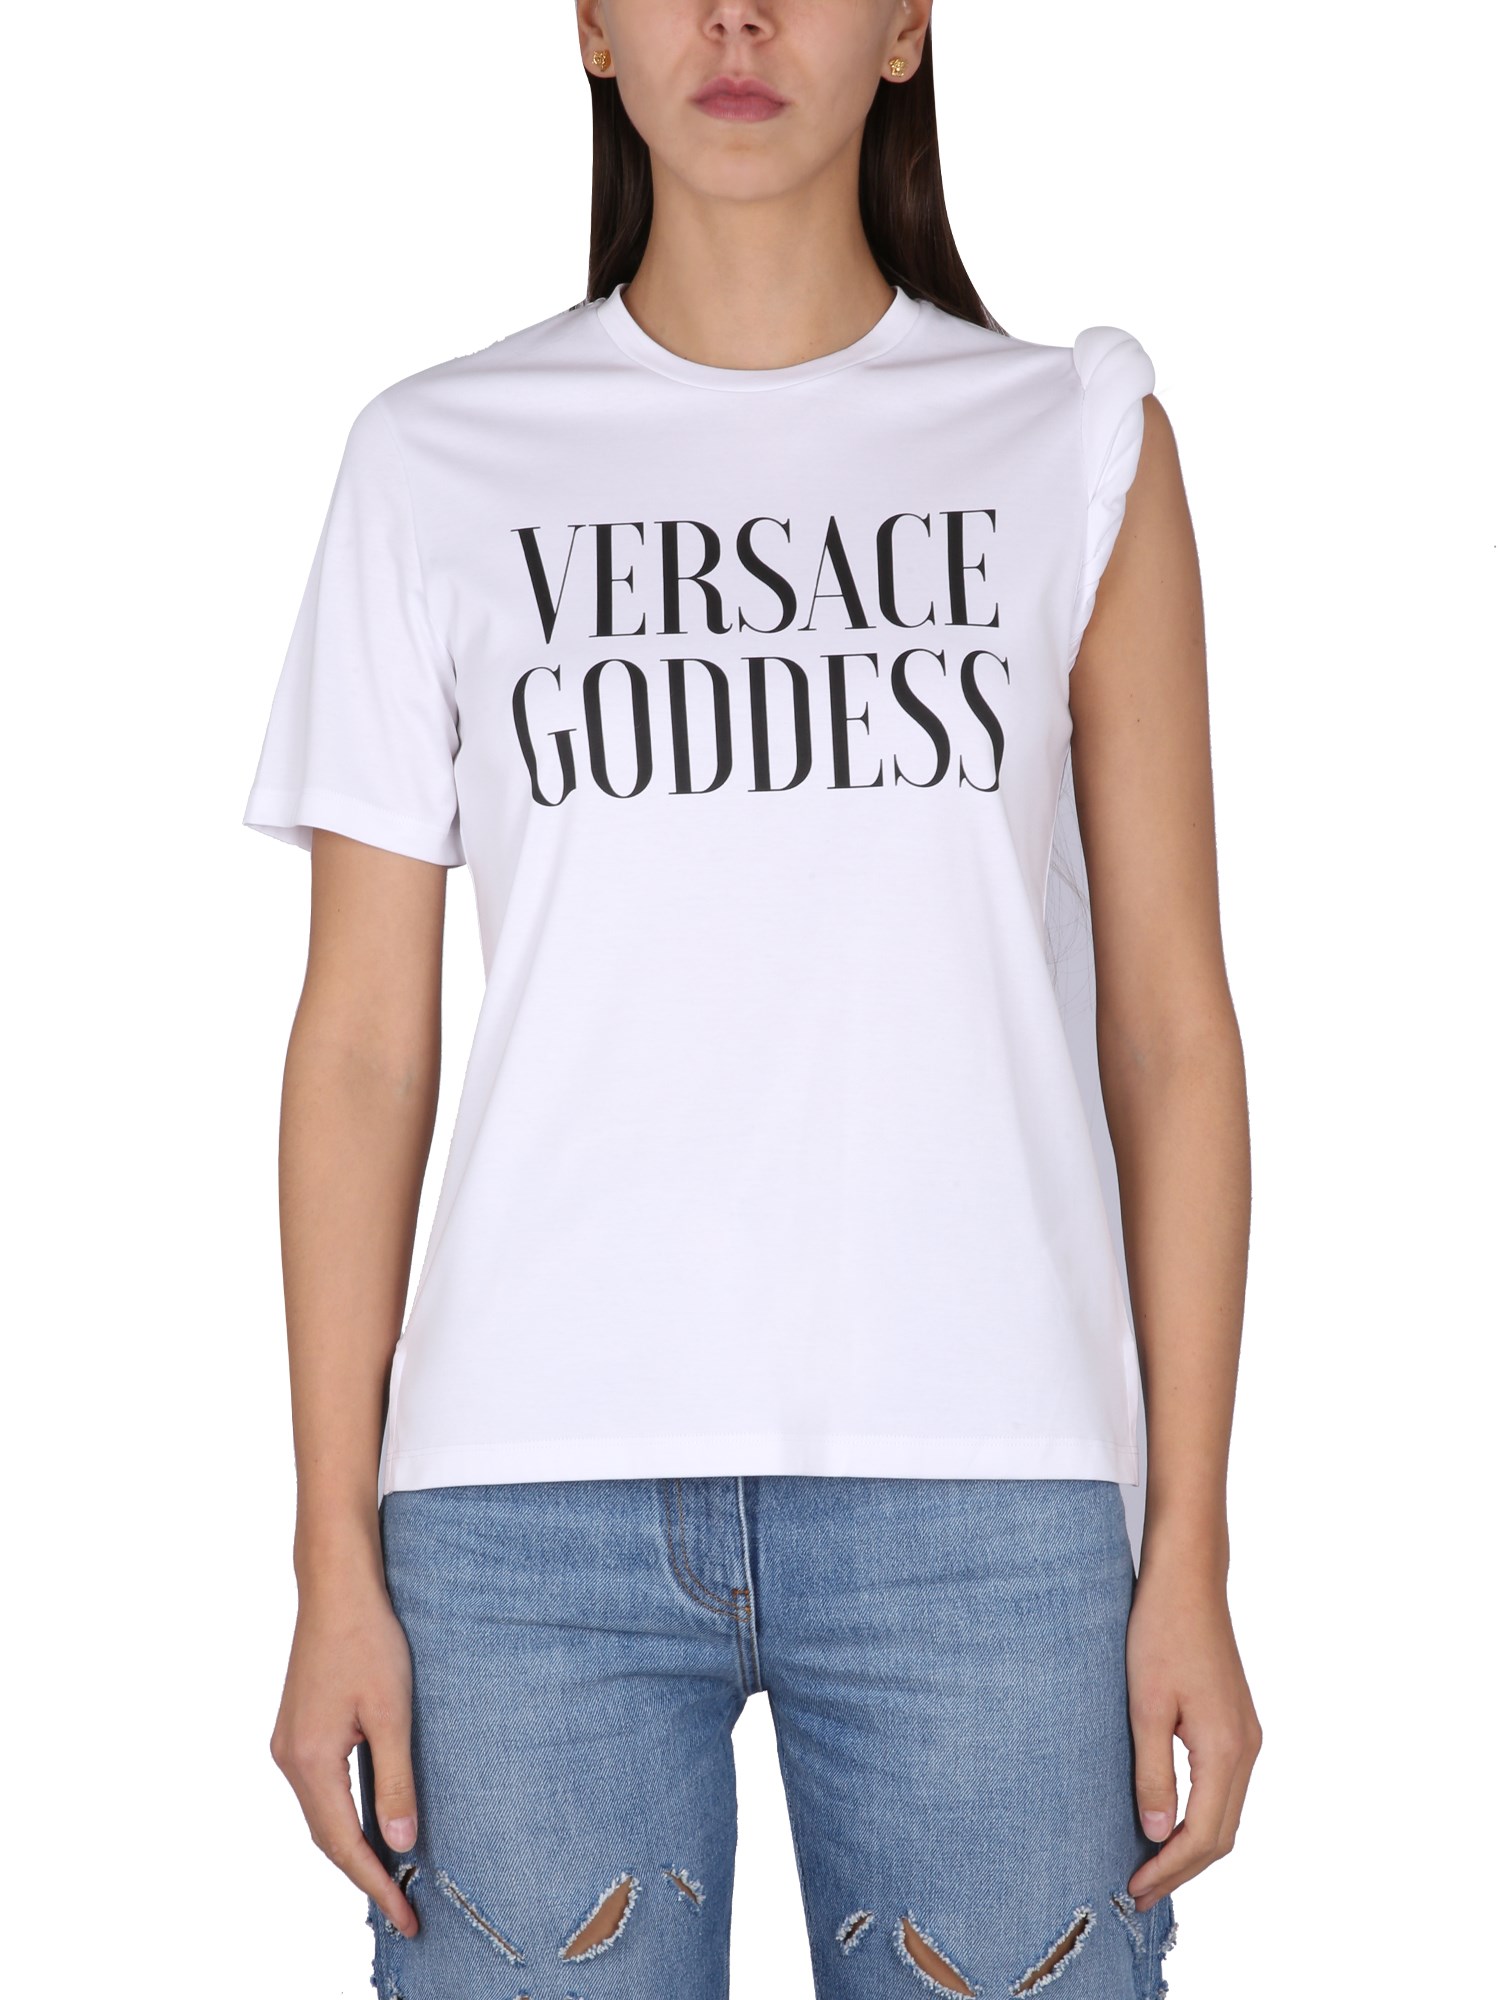 Versace versace versace goddess t-shirt